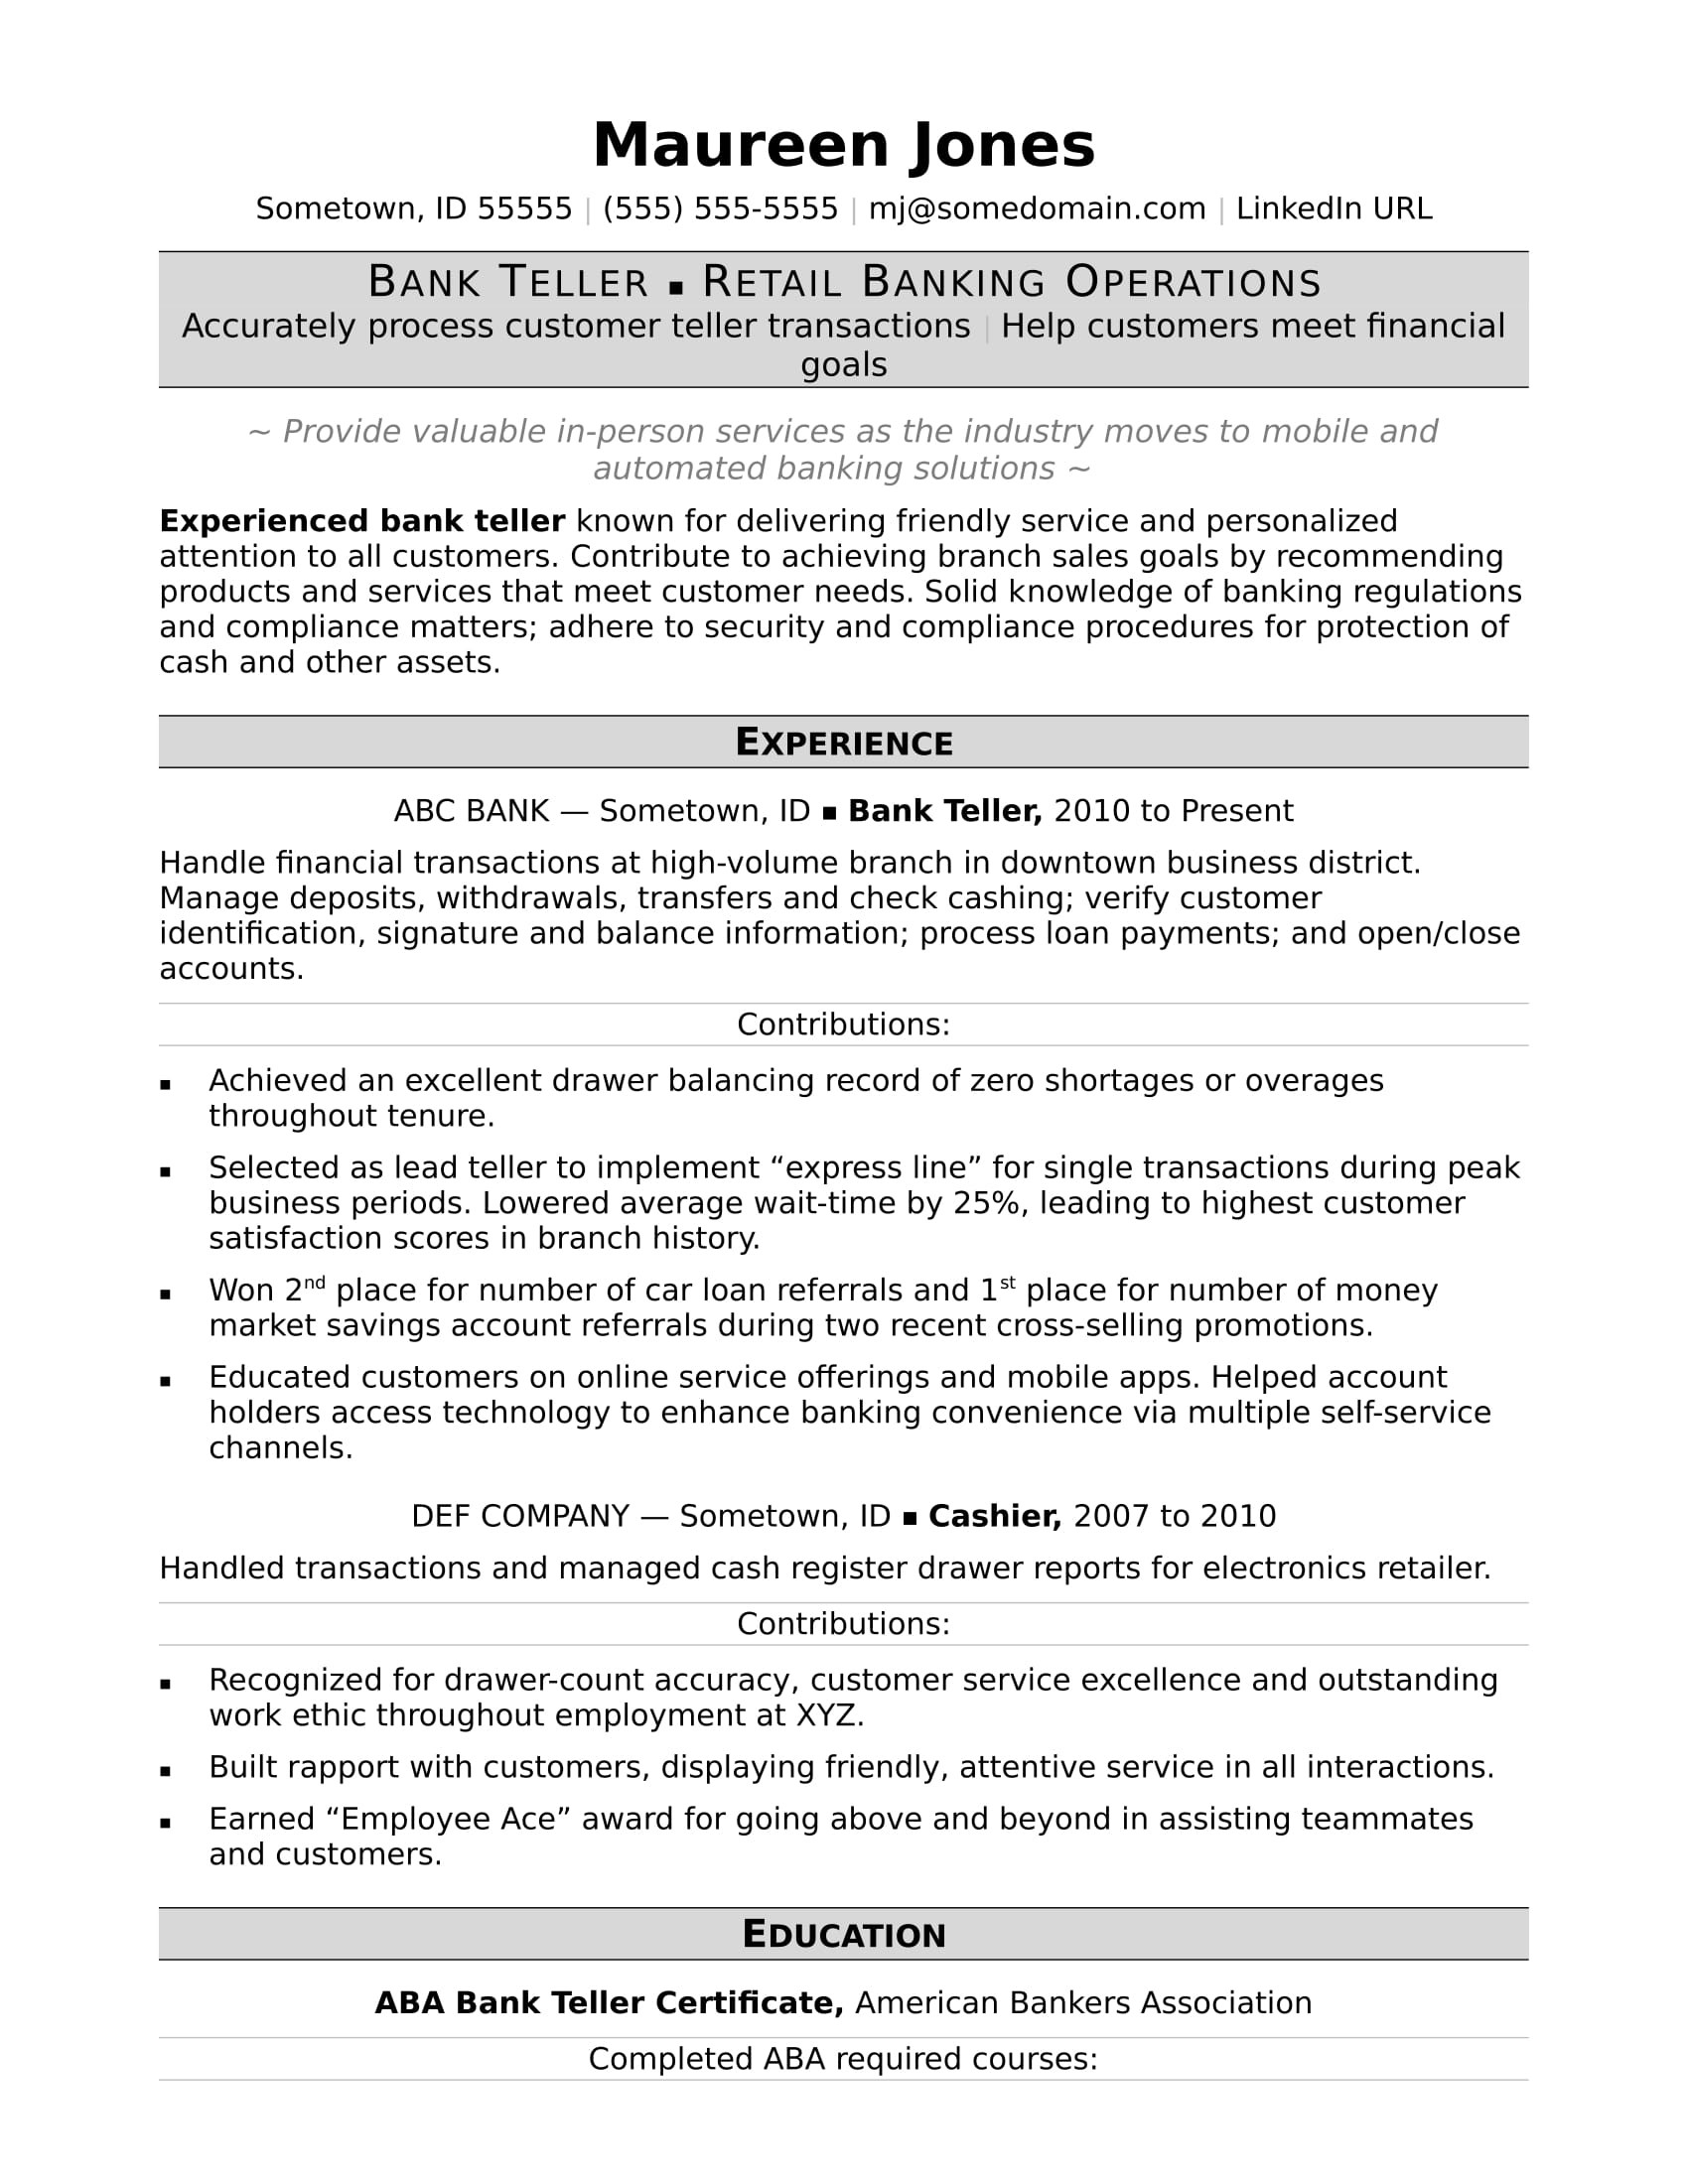 Professional Resume Samples for Banking Jobs Bank Teller Resume Monster.com